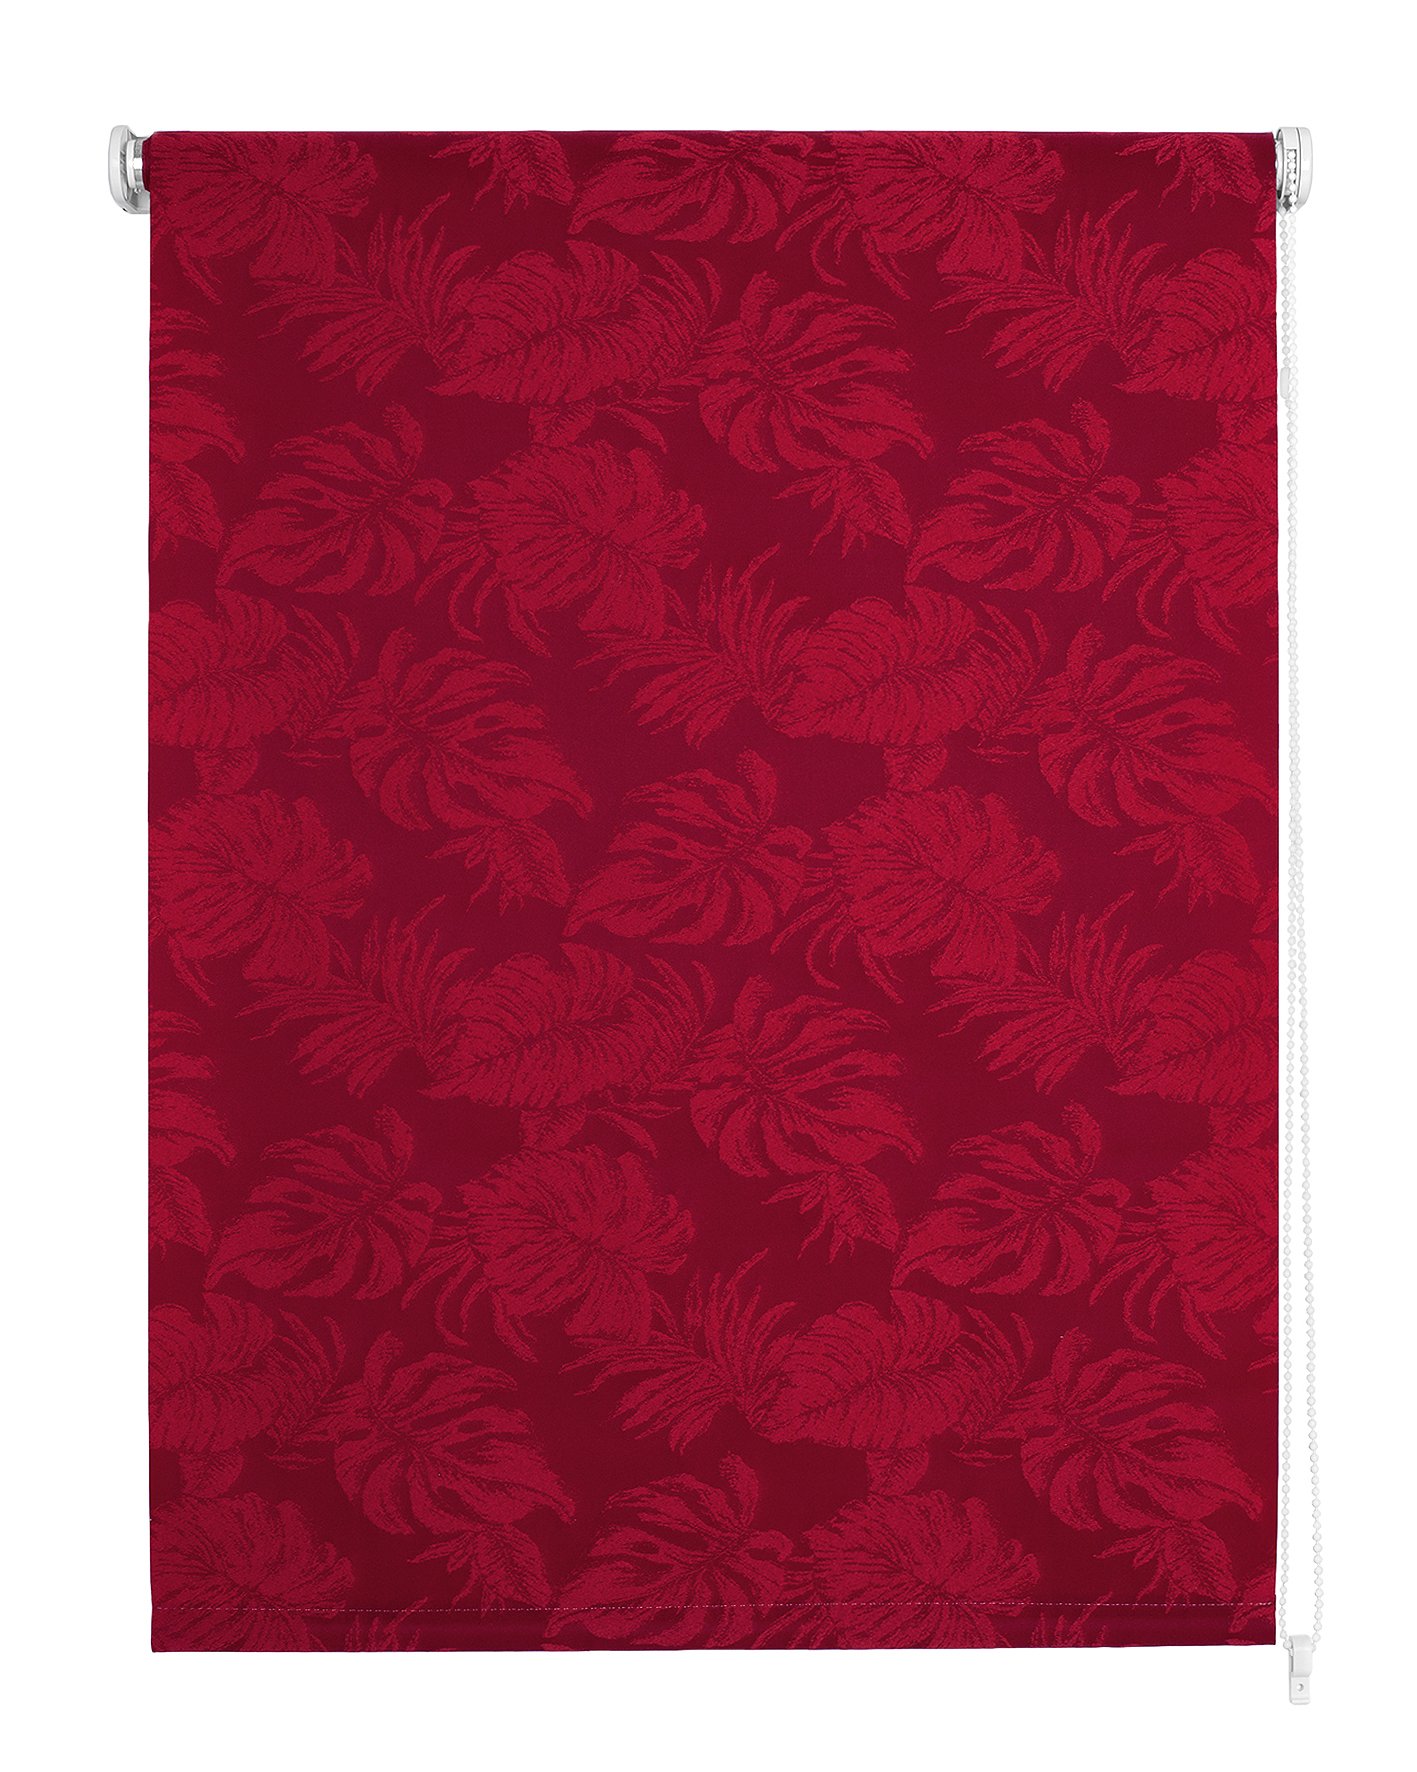 Klasikinė ritininė užuolaida OSLO, raudonos sp.,100 x 170 cm, 100 % poliesteris - 4